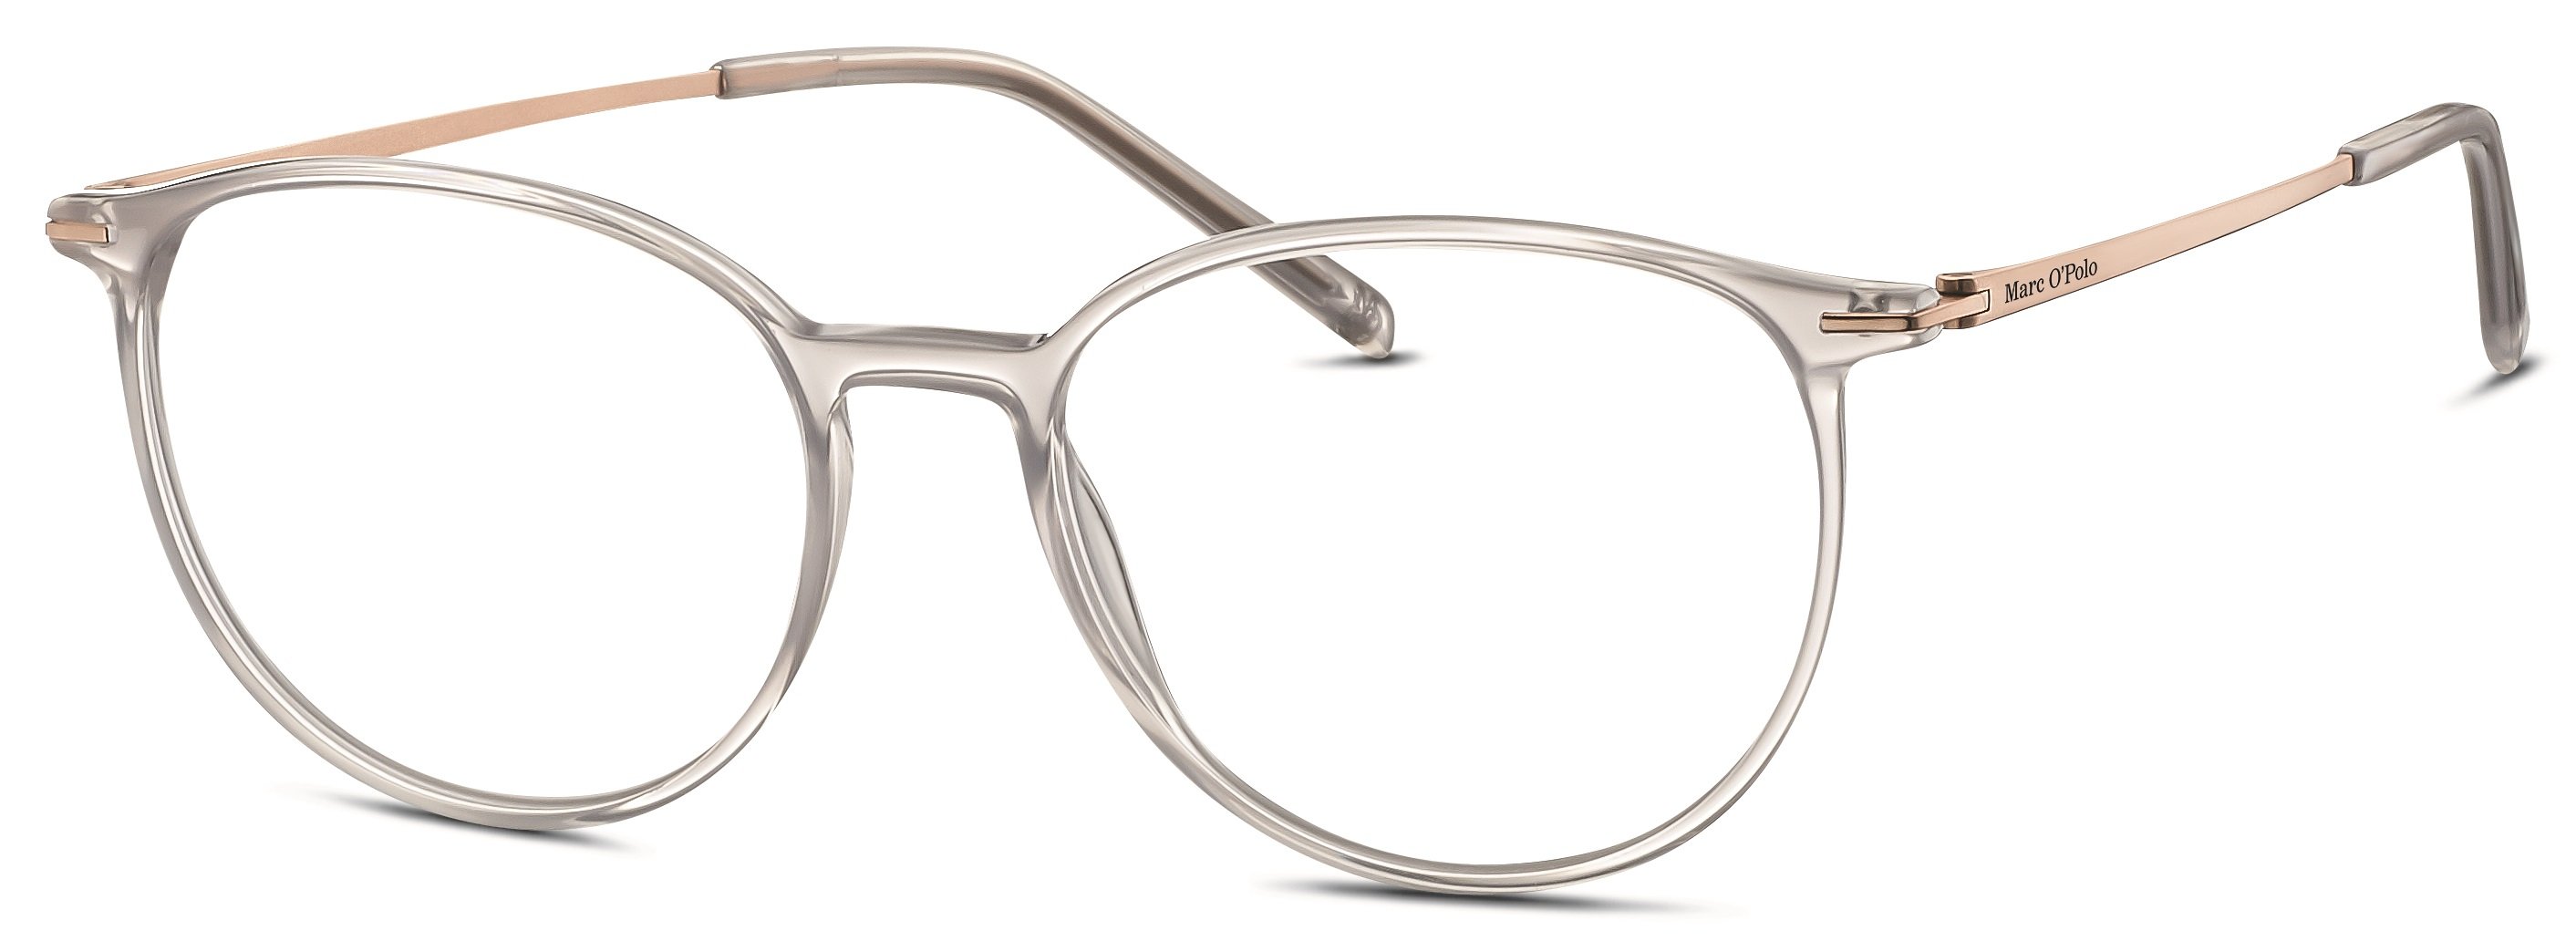 Das Bild zeigt die Korrektionsbrille 503148 30 von der Marke Marc o Polo in grau transparent.